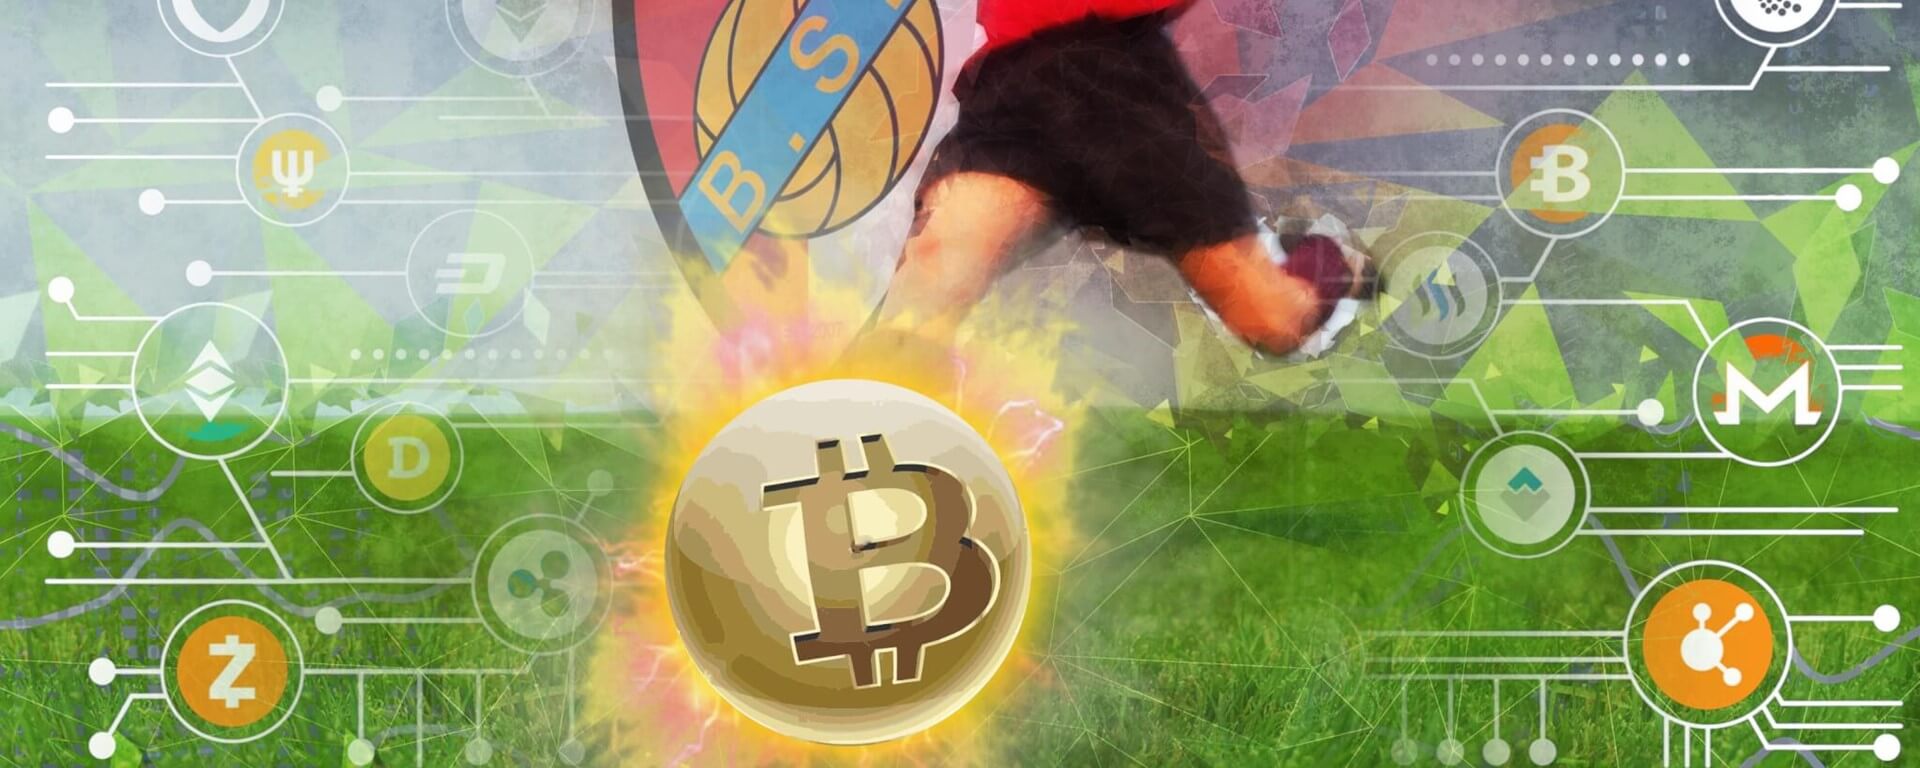 Fantasy sports crypto bitcoin flip app